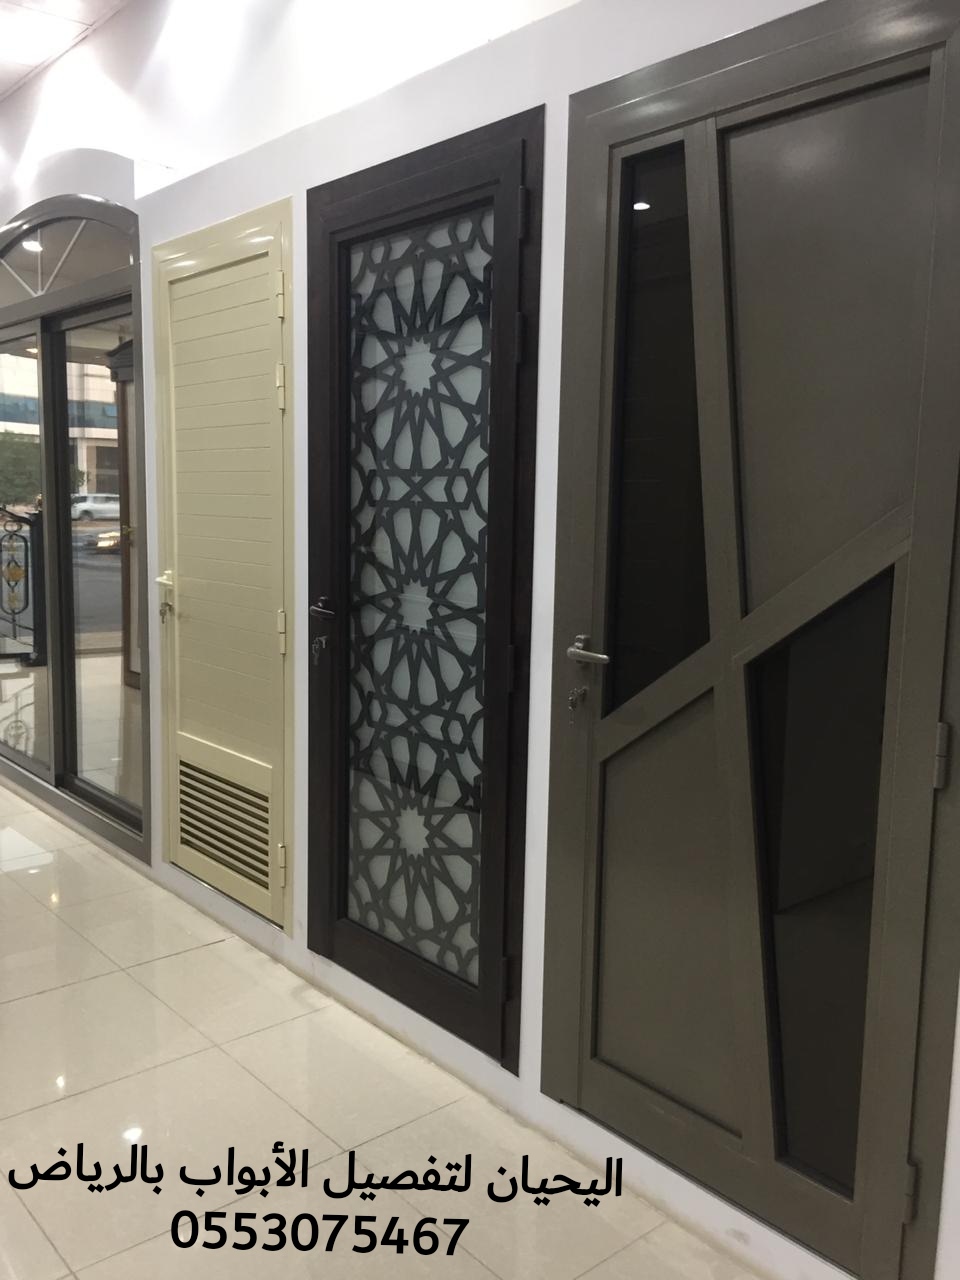 اليحيان لتصنيع وتفصيل أبواب خشب بالرياض 0553075467 أبواب حديد للبيع في الرياض،ابواب ليزر للبيع بالرياض P_1550vl1qf4